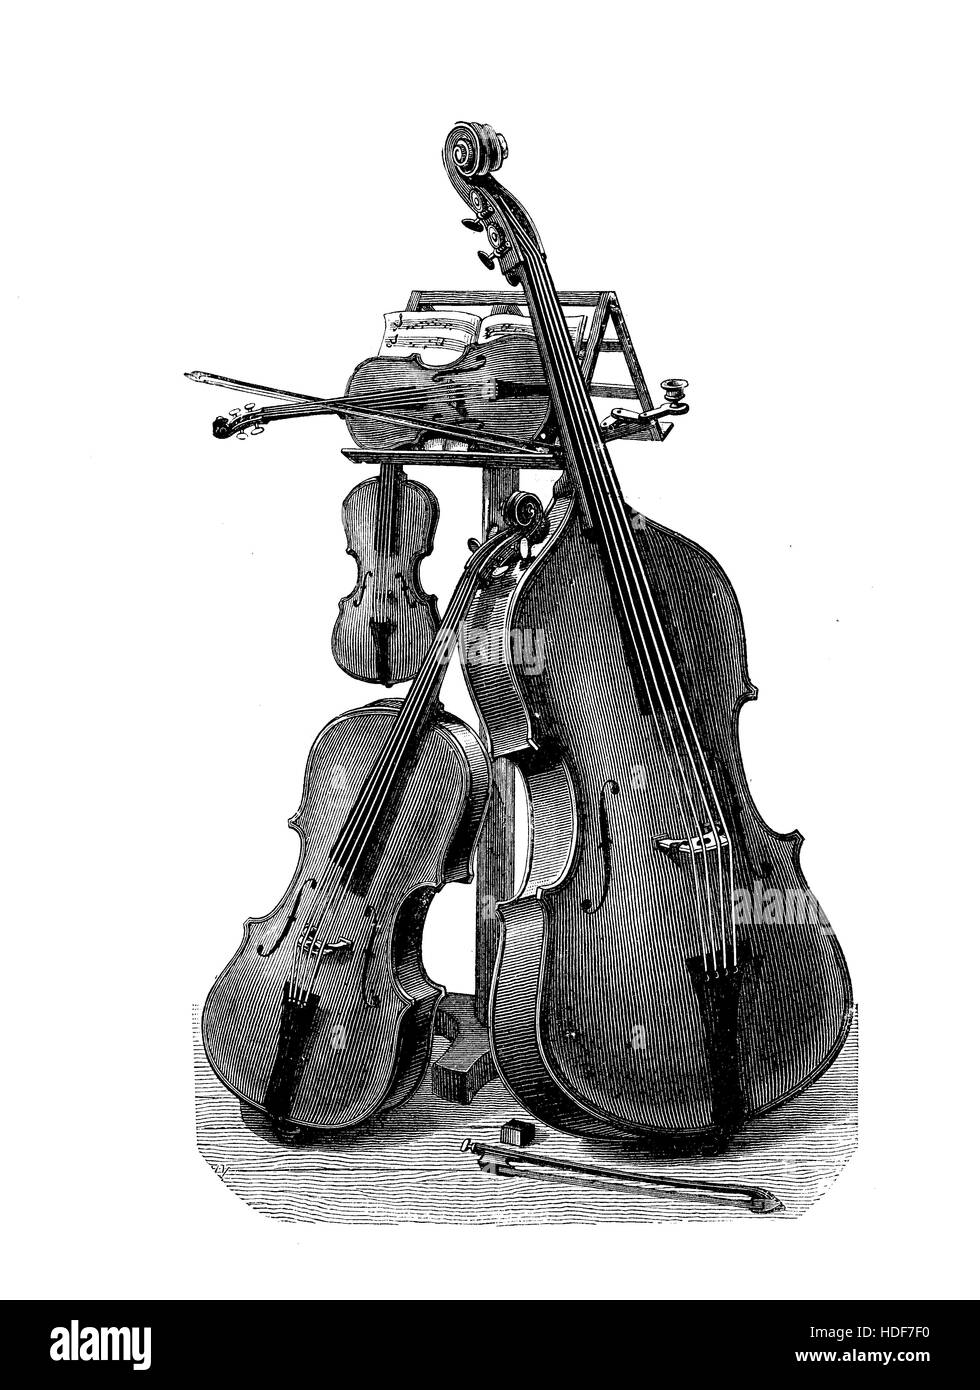 Musica, quartetto d'archi strumenti pronti per le prestazioni, la bella incisione vintage Foto Stock